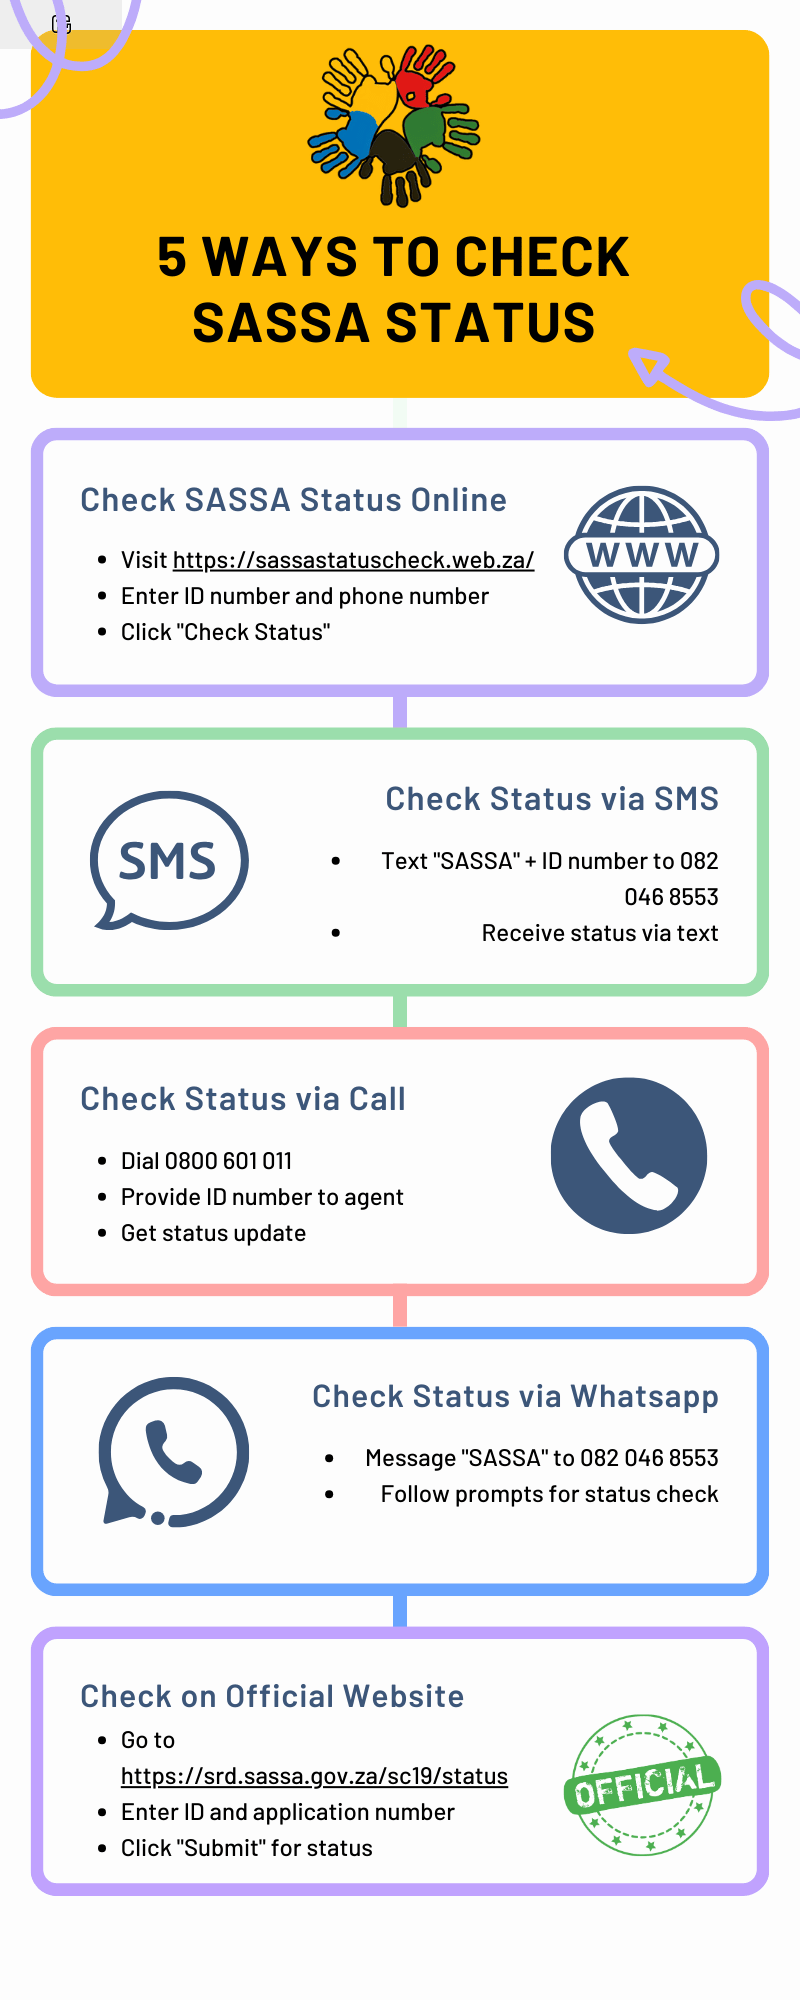 5 Ways to Check SASSA Status